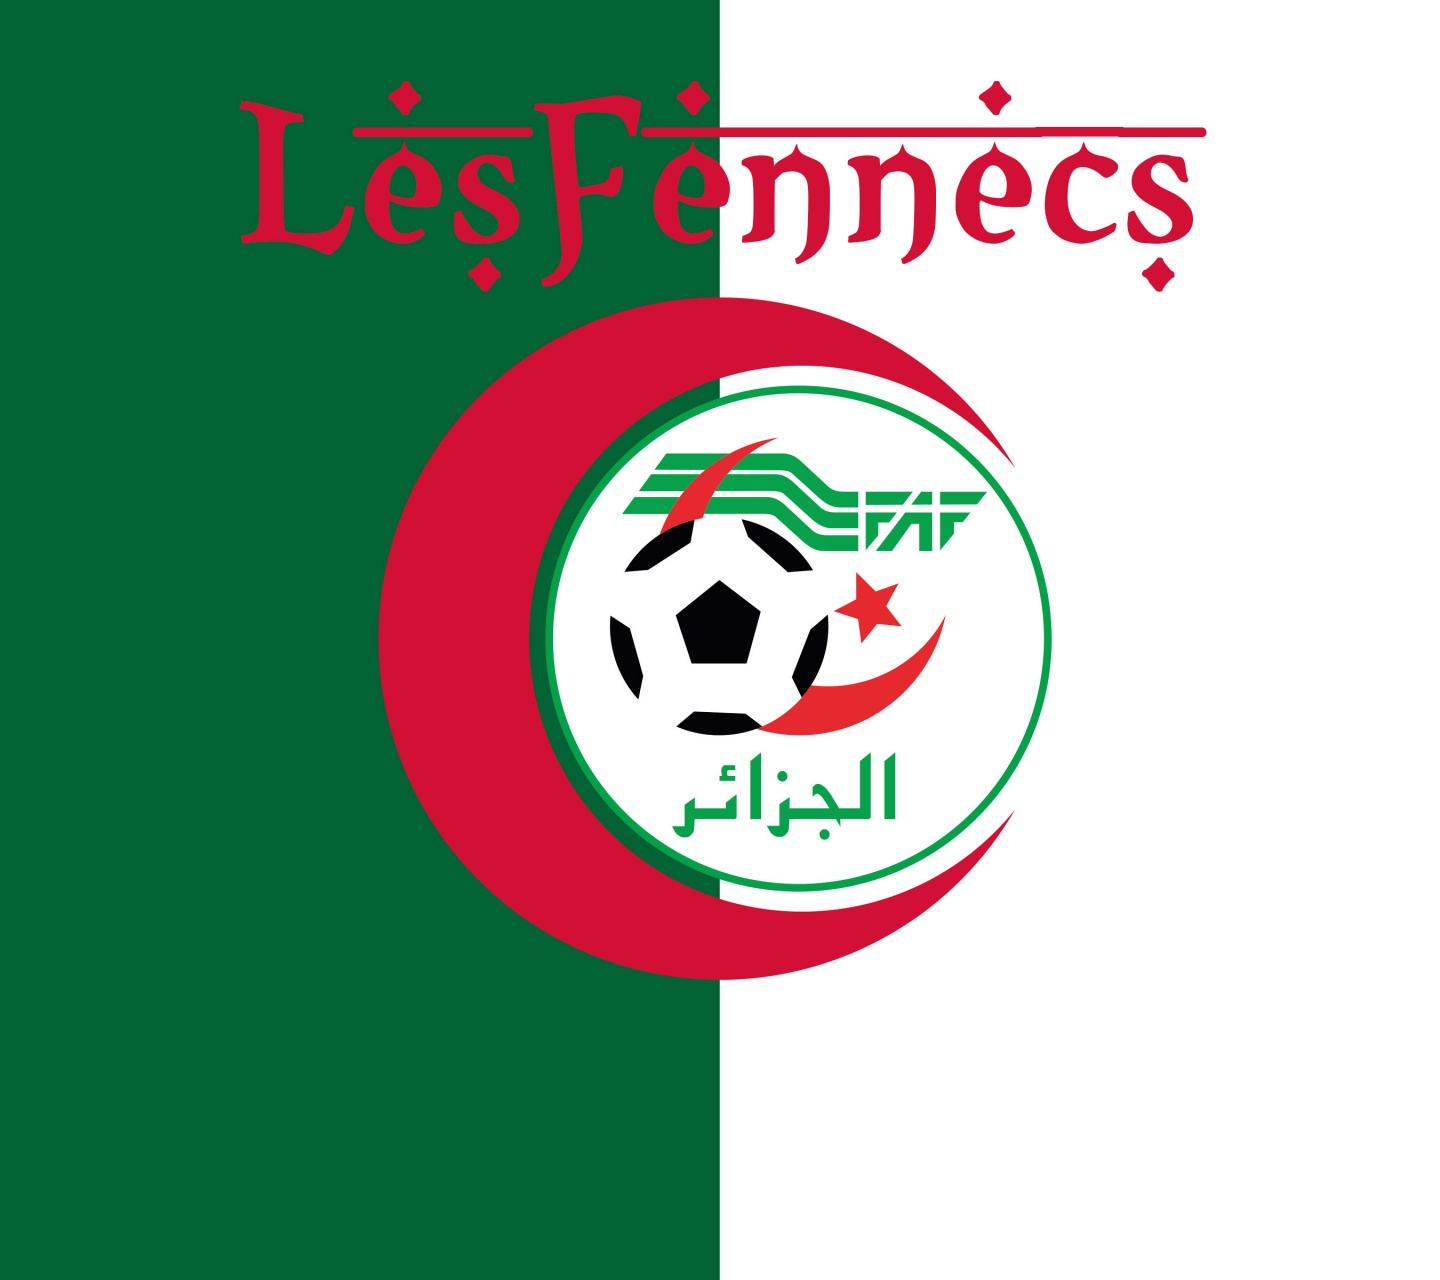 Les Fennecs Algeria Football Crest Logo